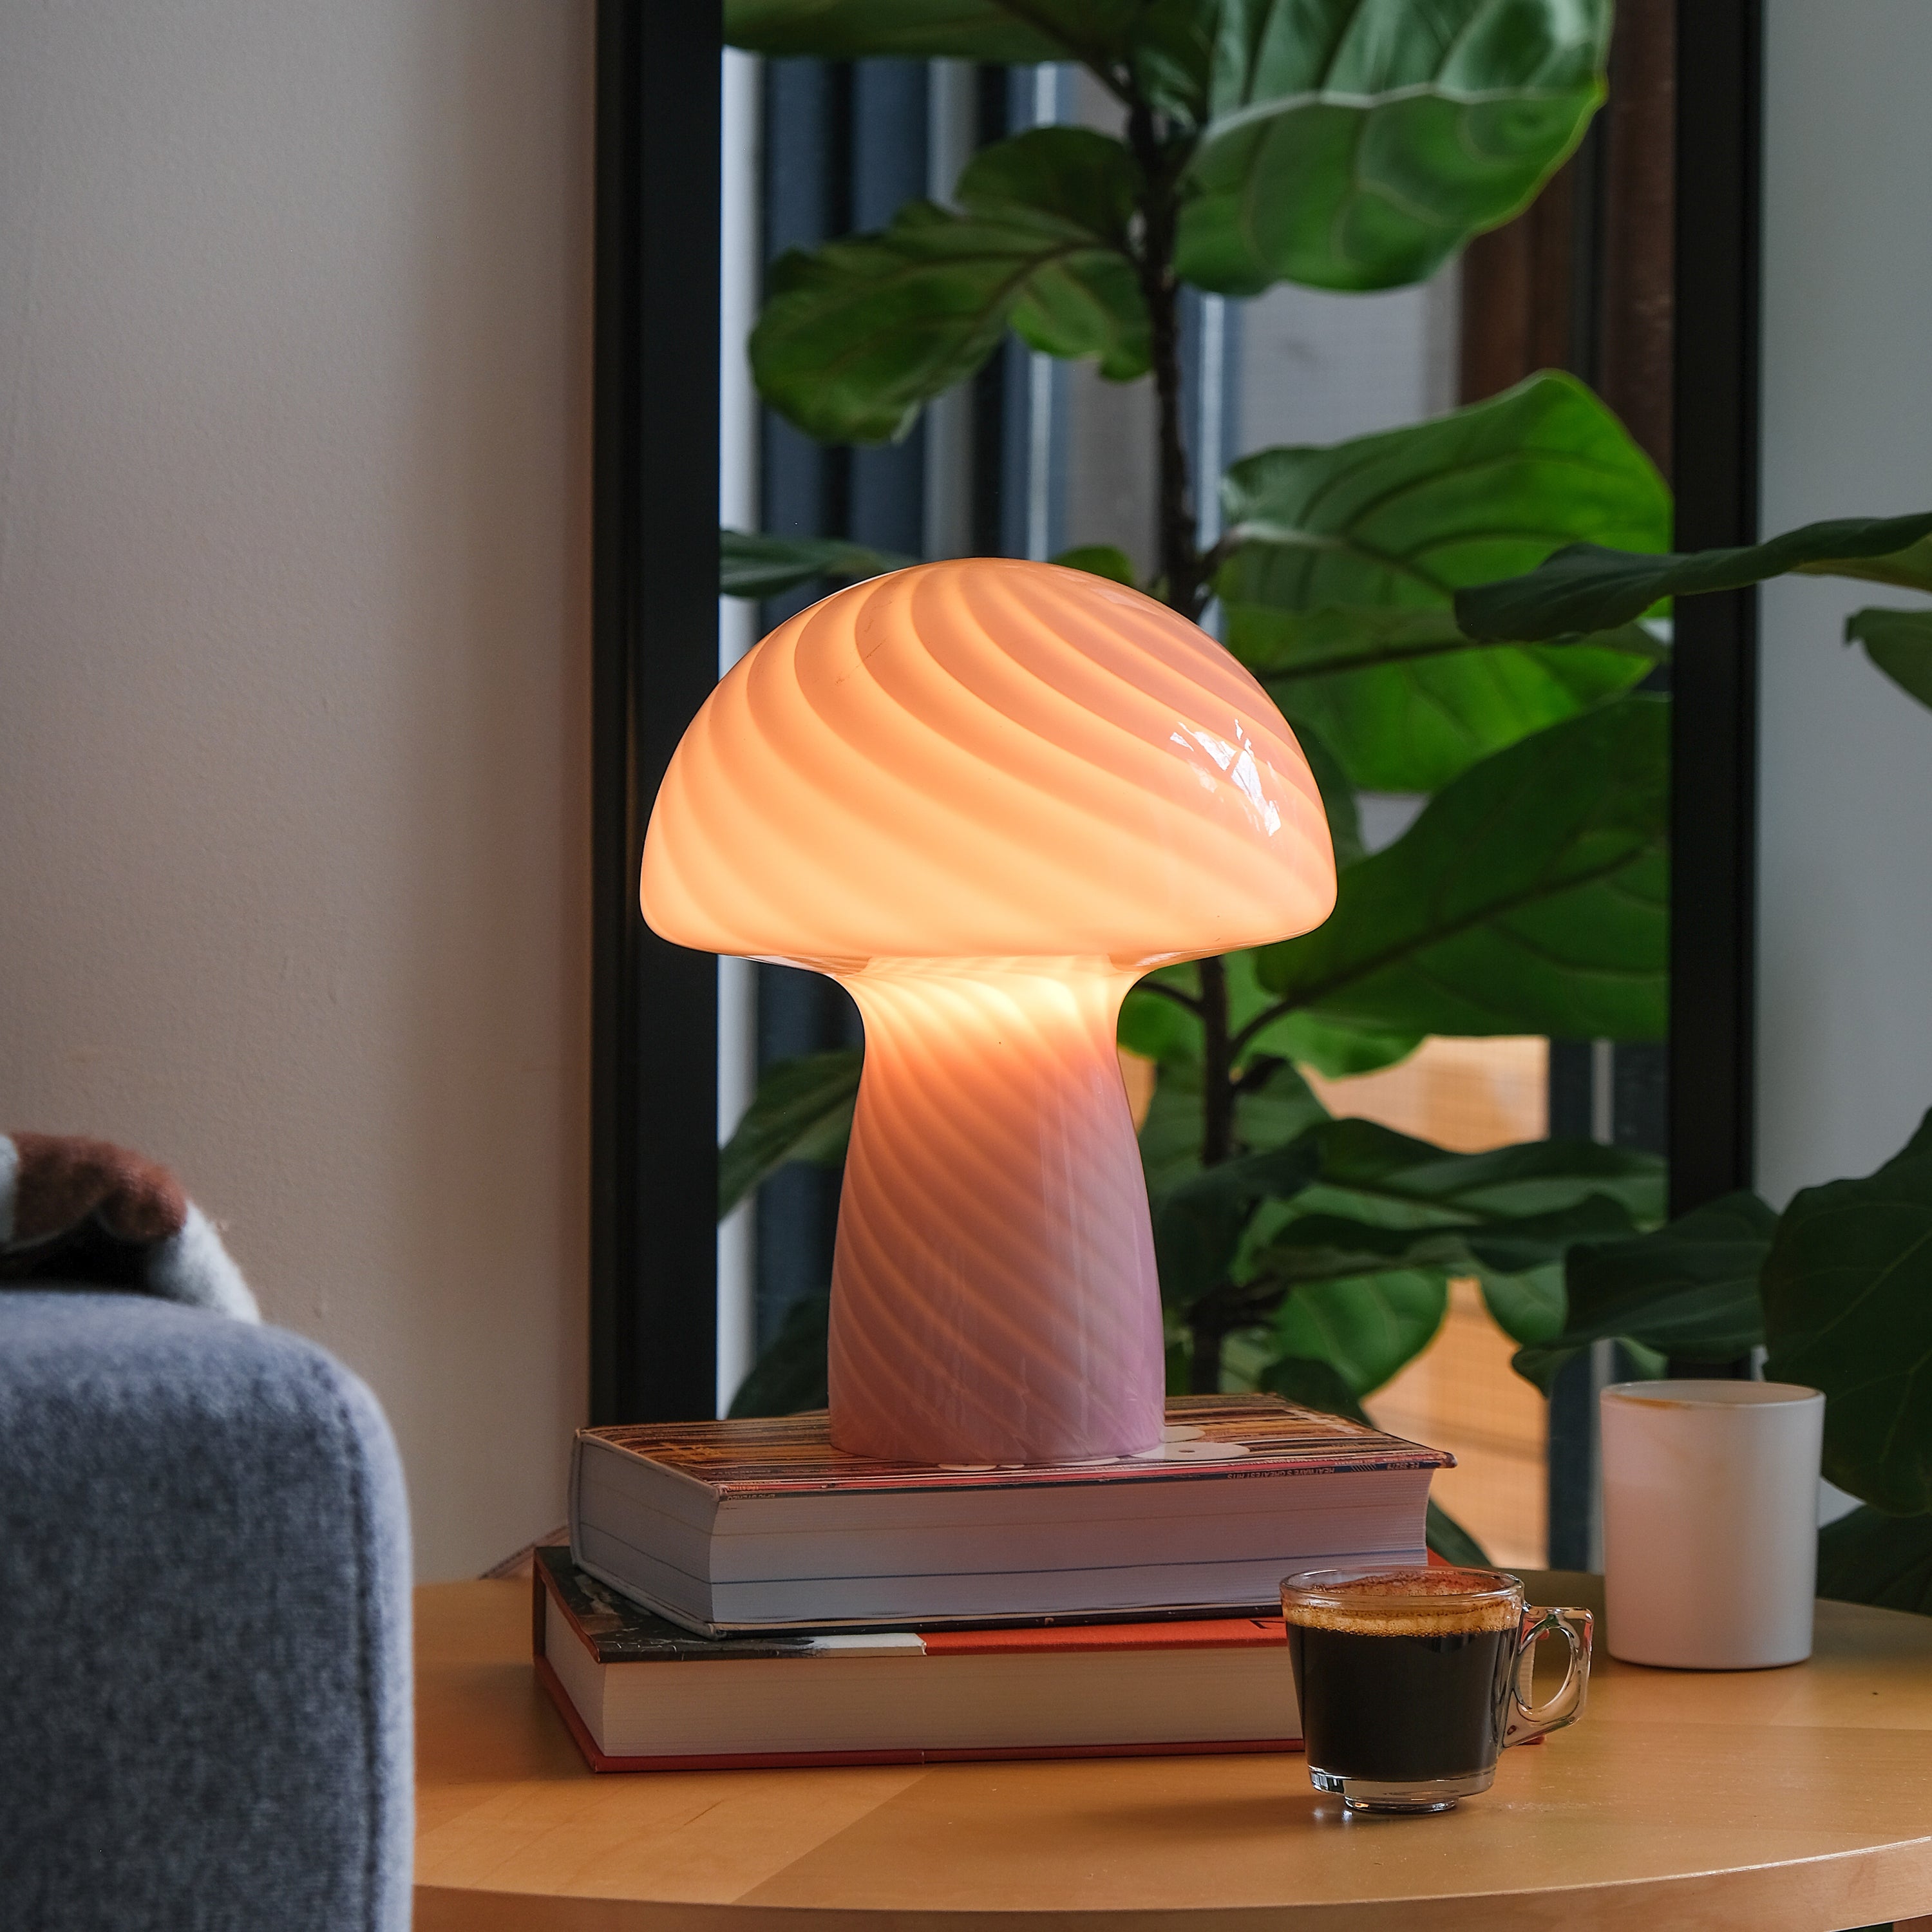 Close Top Mushroom Lamp Rose Pink / Petite